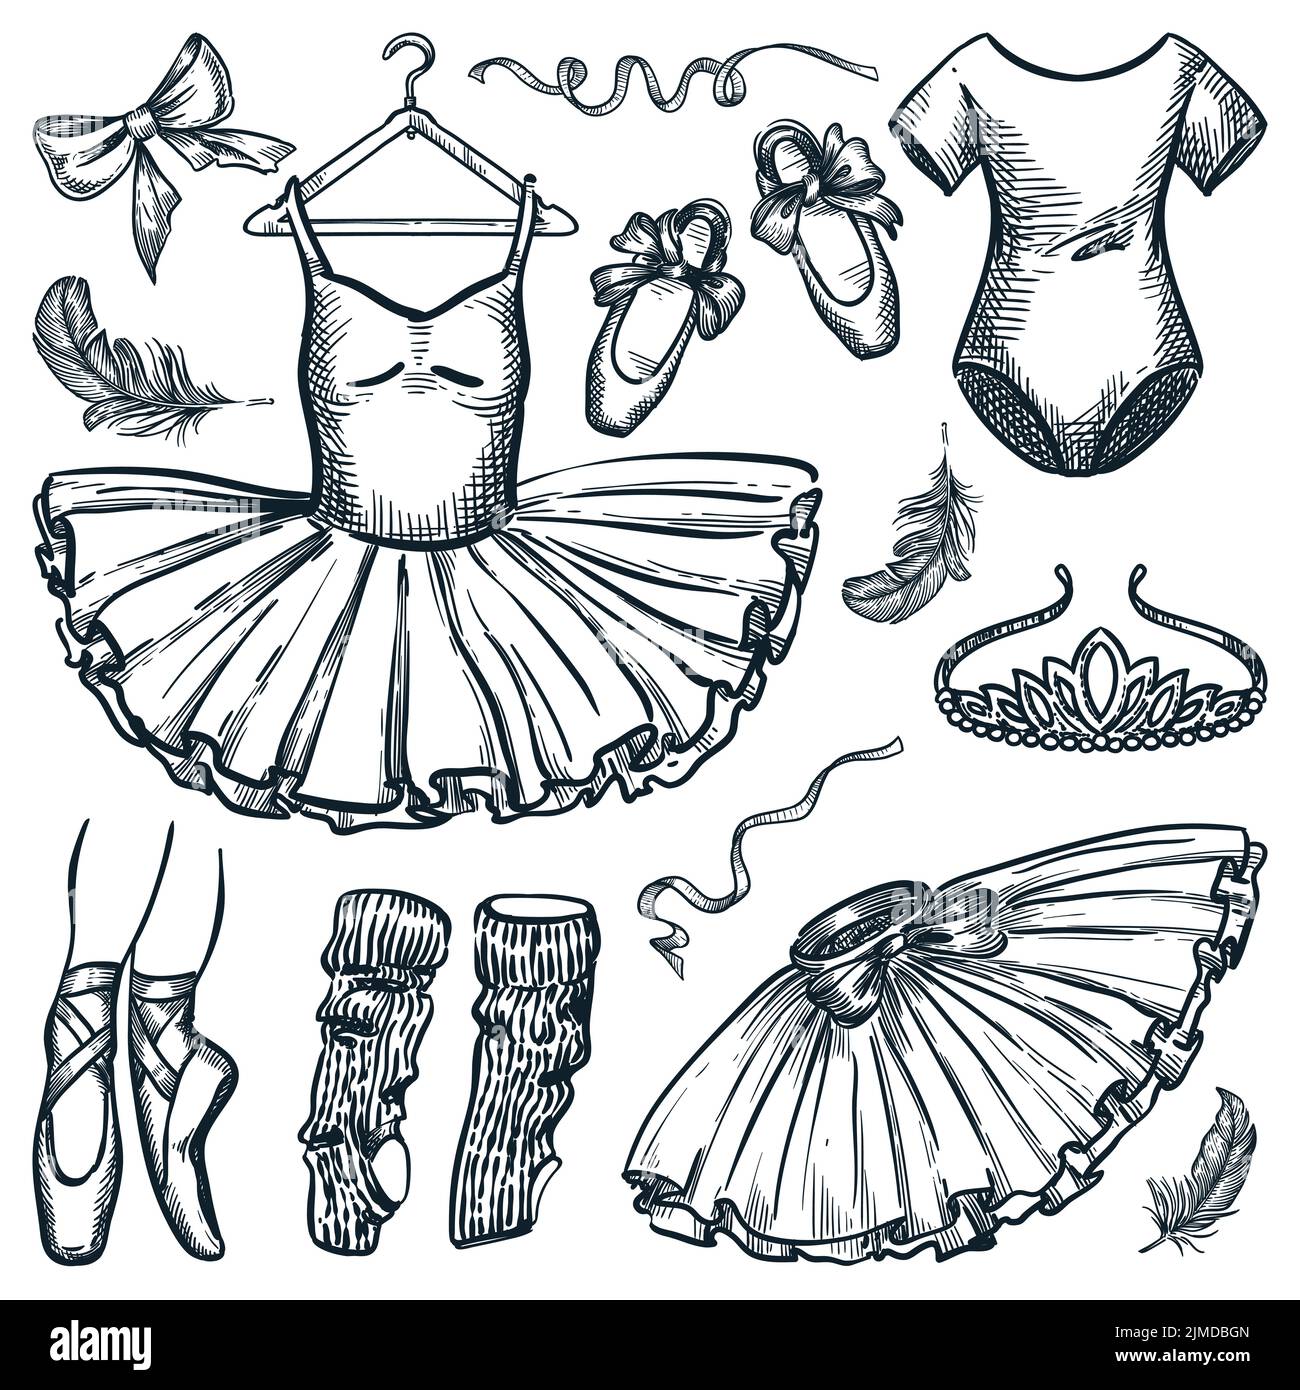 Design-Elemente für Ballett-Tanz auf weißem Hintergrund isoliert. Vektor handgezeichnete Skizze Illustration von Ballerina Kleid, spitzenschuhe, Body und Tiara Stock Vektor